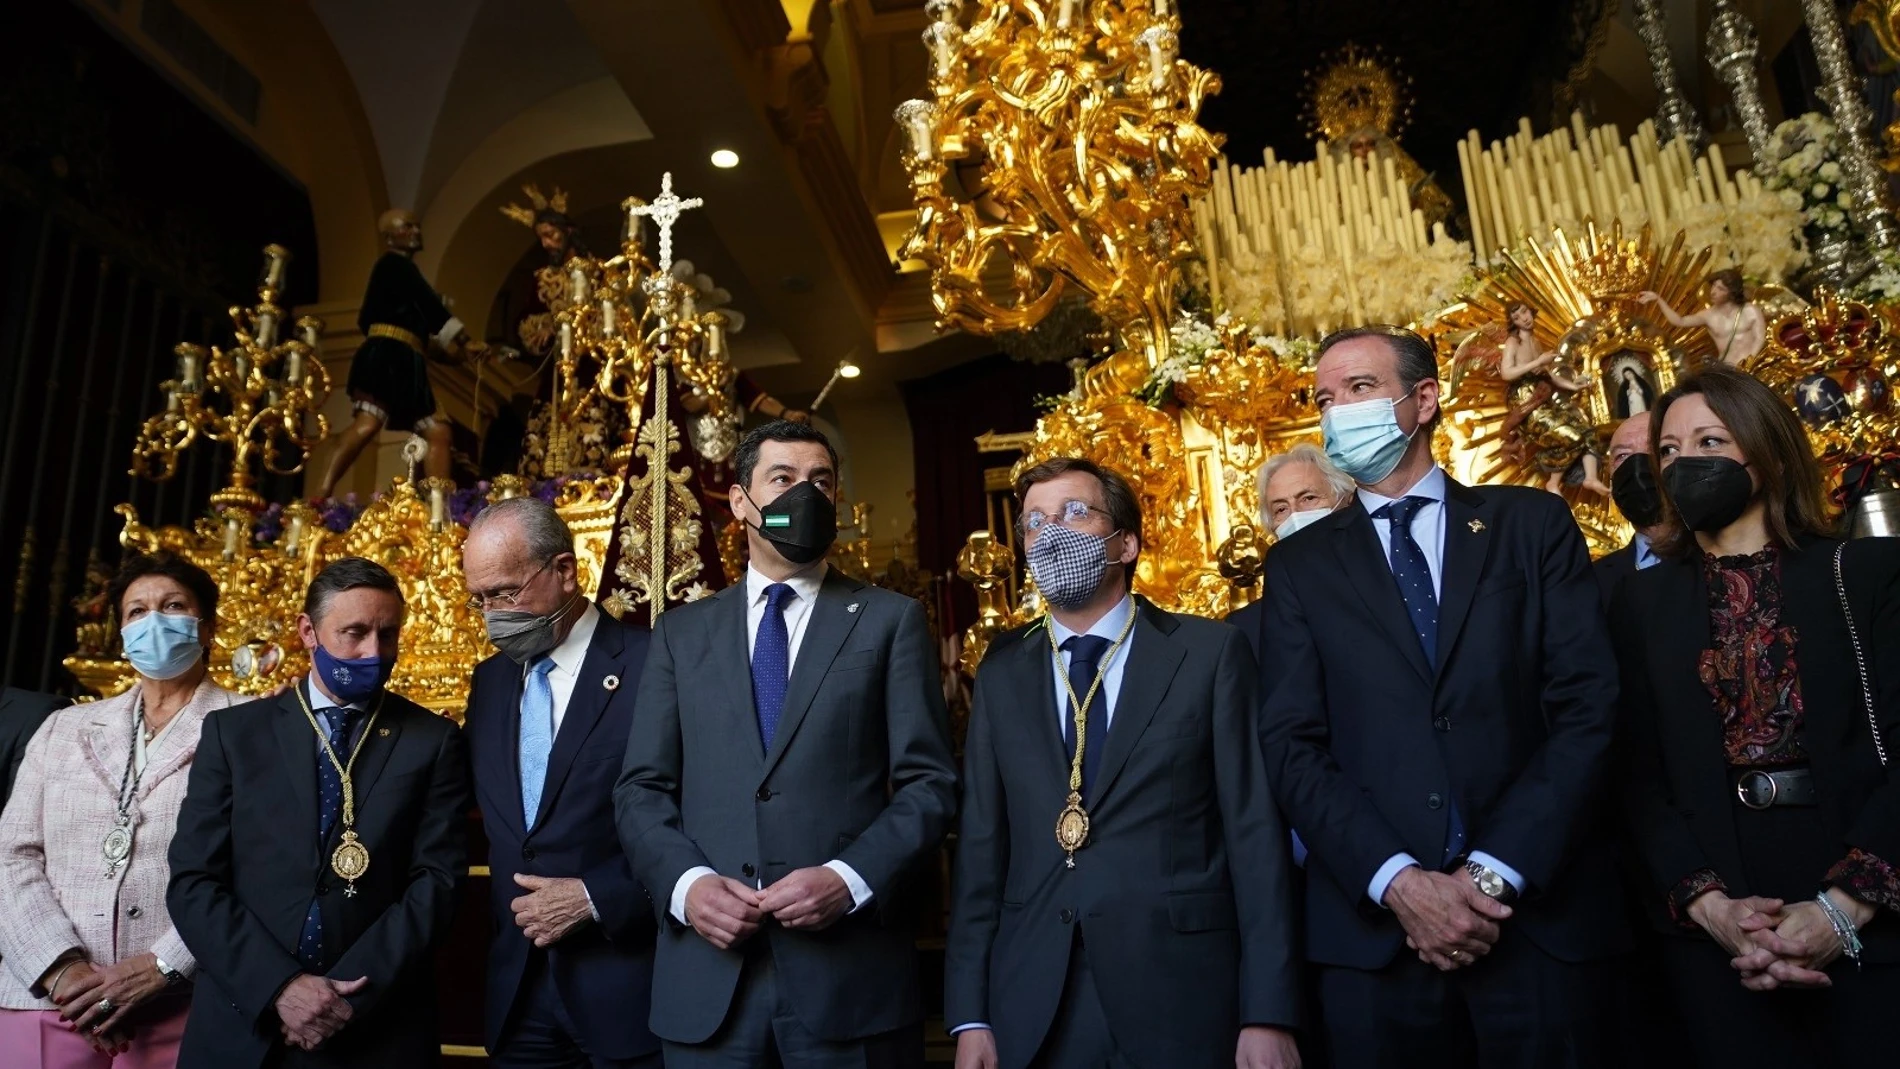 El presidente andaluz, Juanma Moreno, junto a los alcaldes de Málaga y Madrid visitaron la casa hermandad de la Cofradía de la Paloma de Málaga. TWITTER MORENO